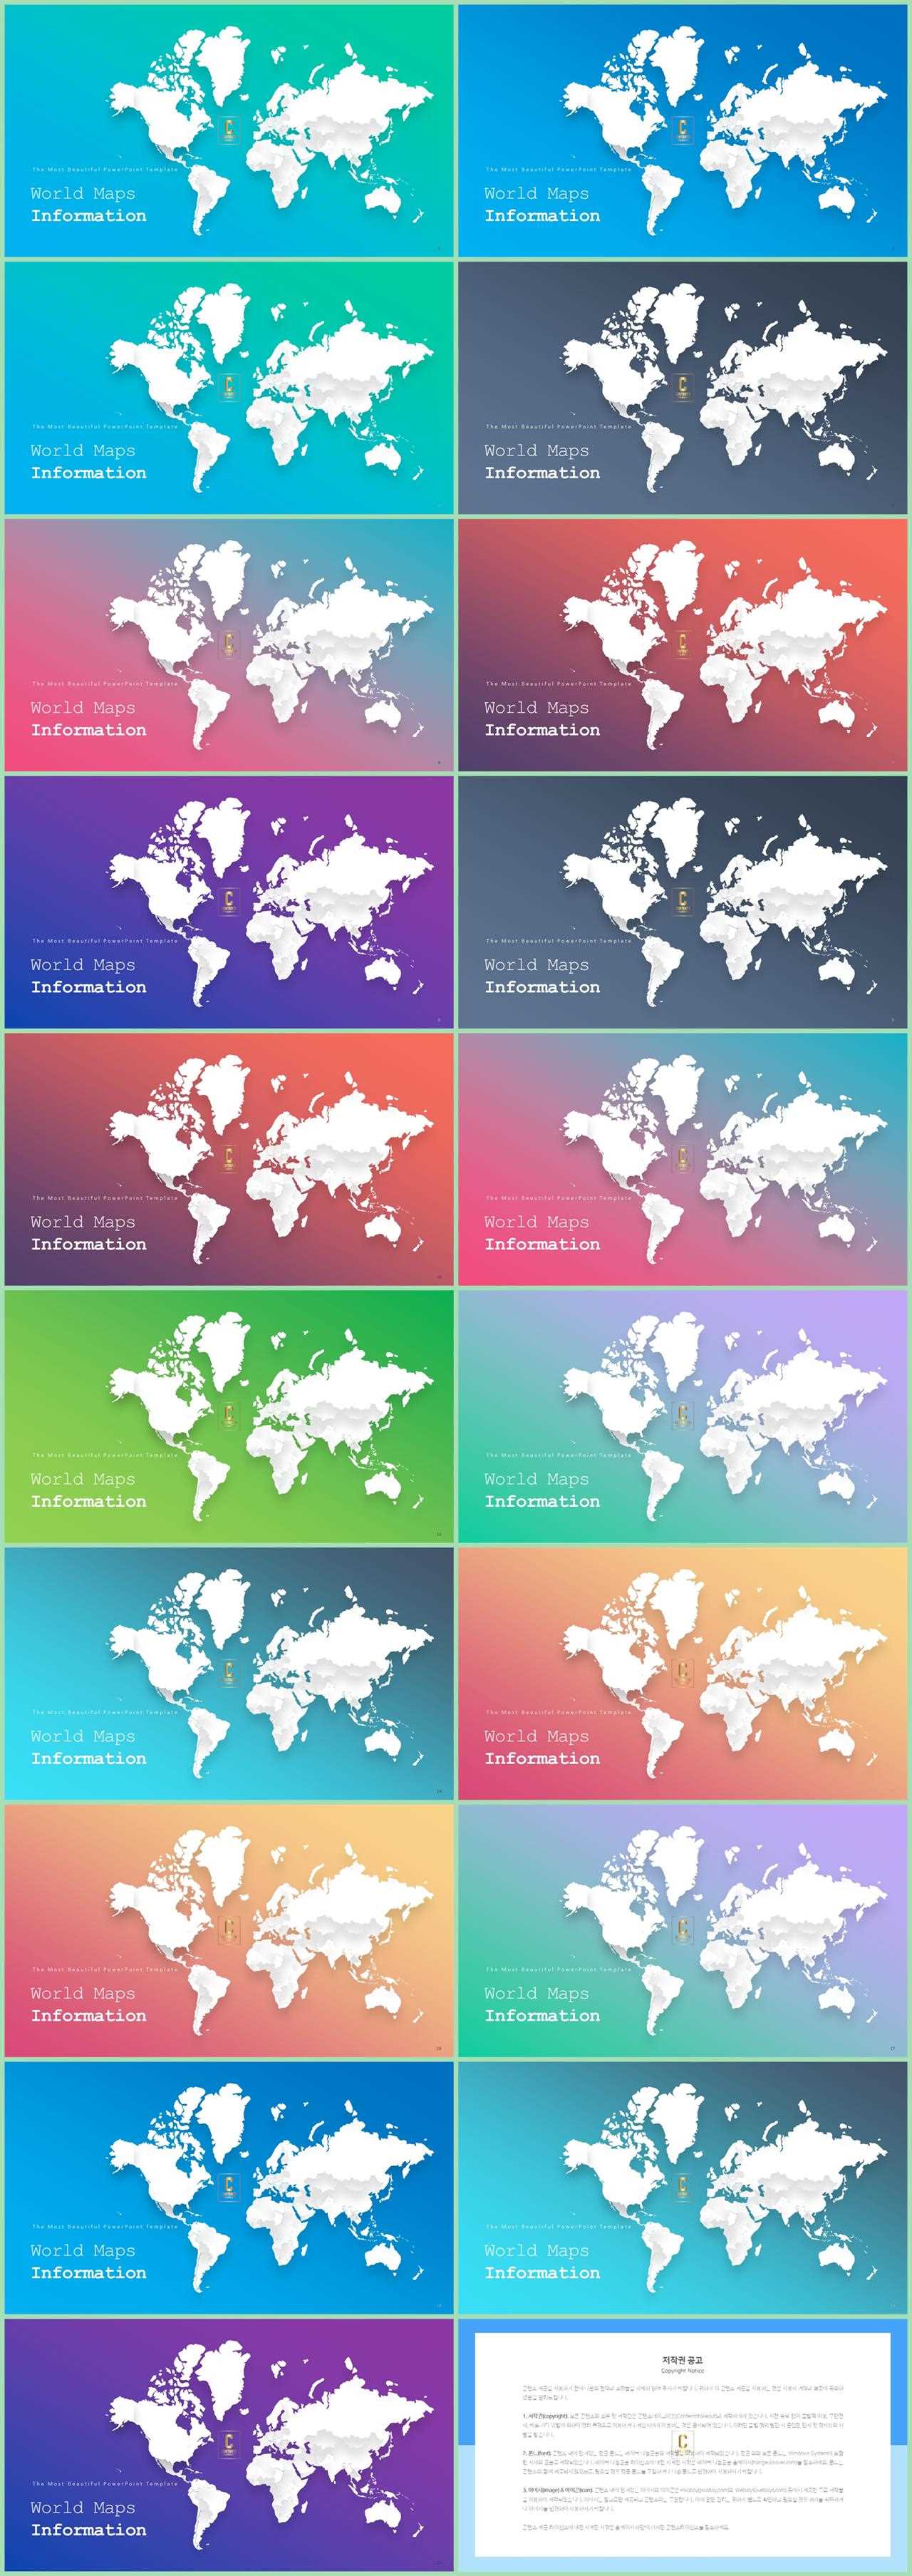 PPT인포그래픽 세계지도형  고퀄리티 피피티테마 사이트 상세보기